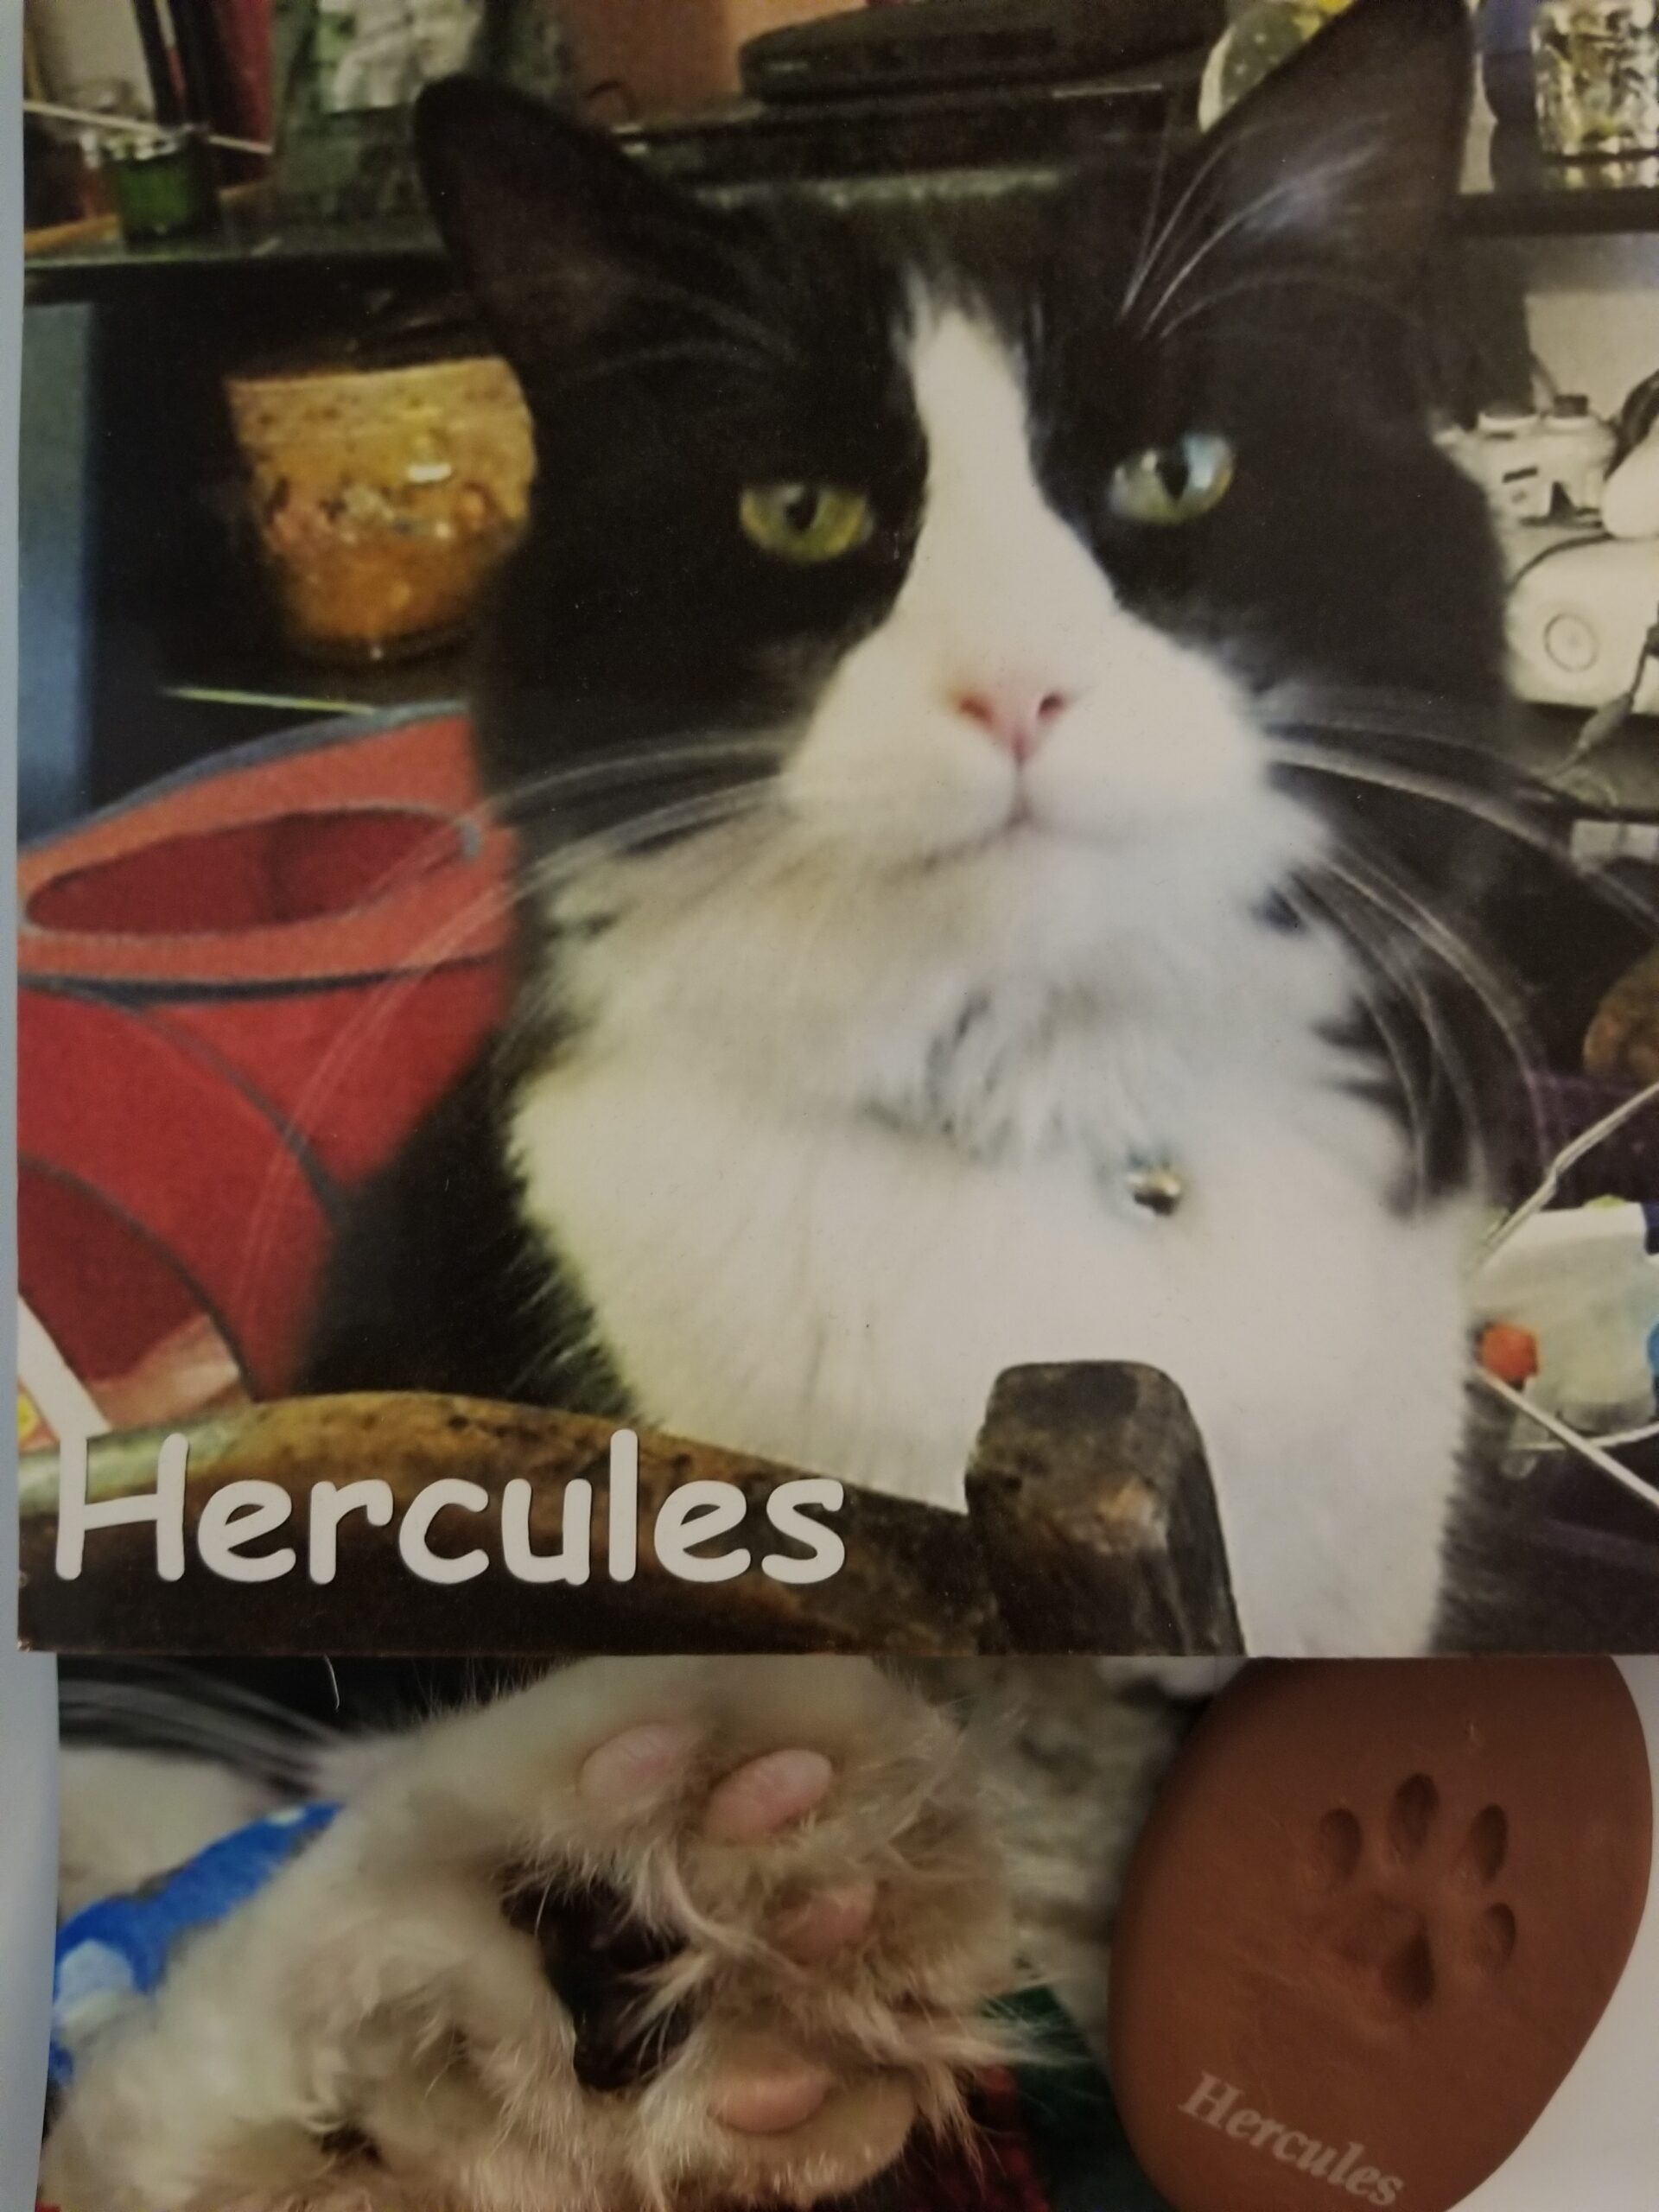 Remembering Hercules